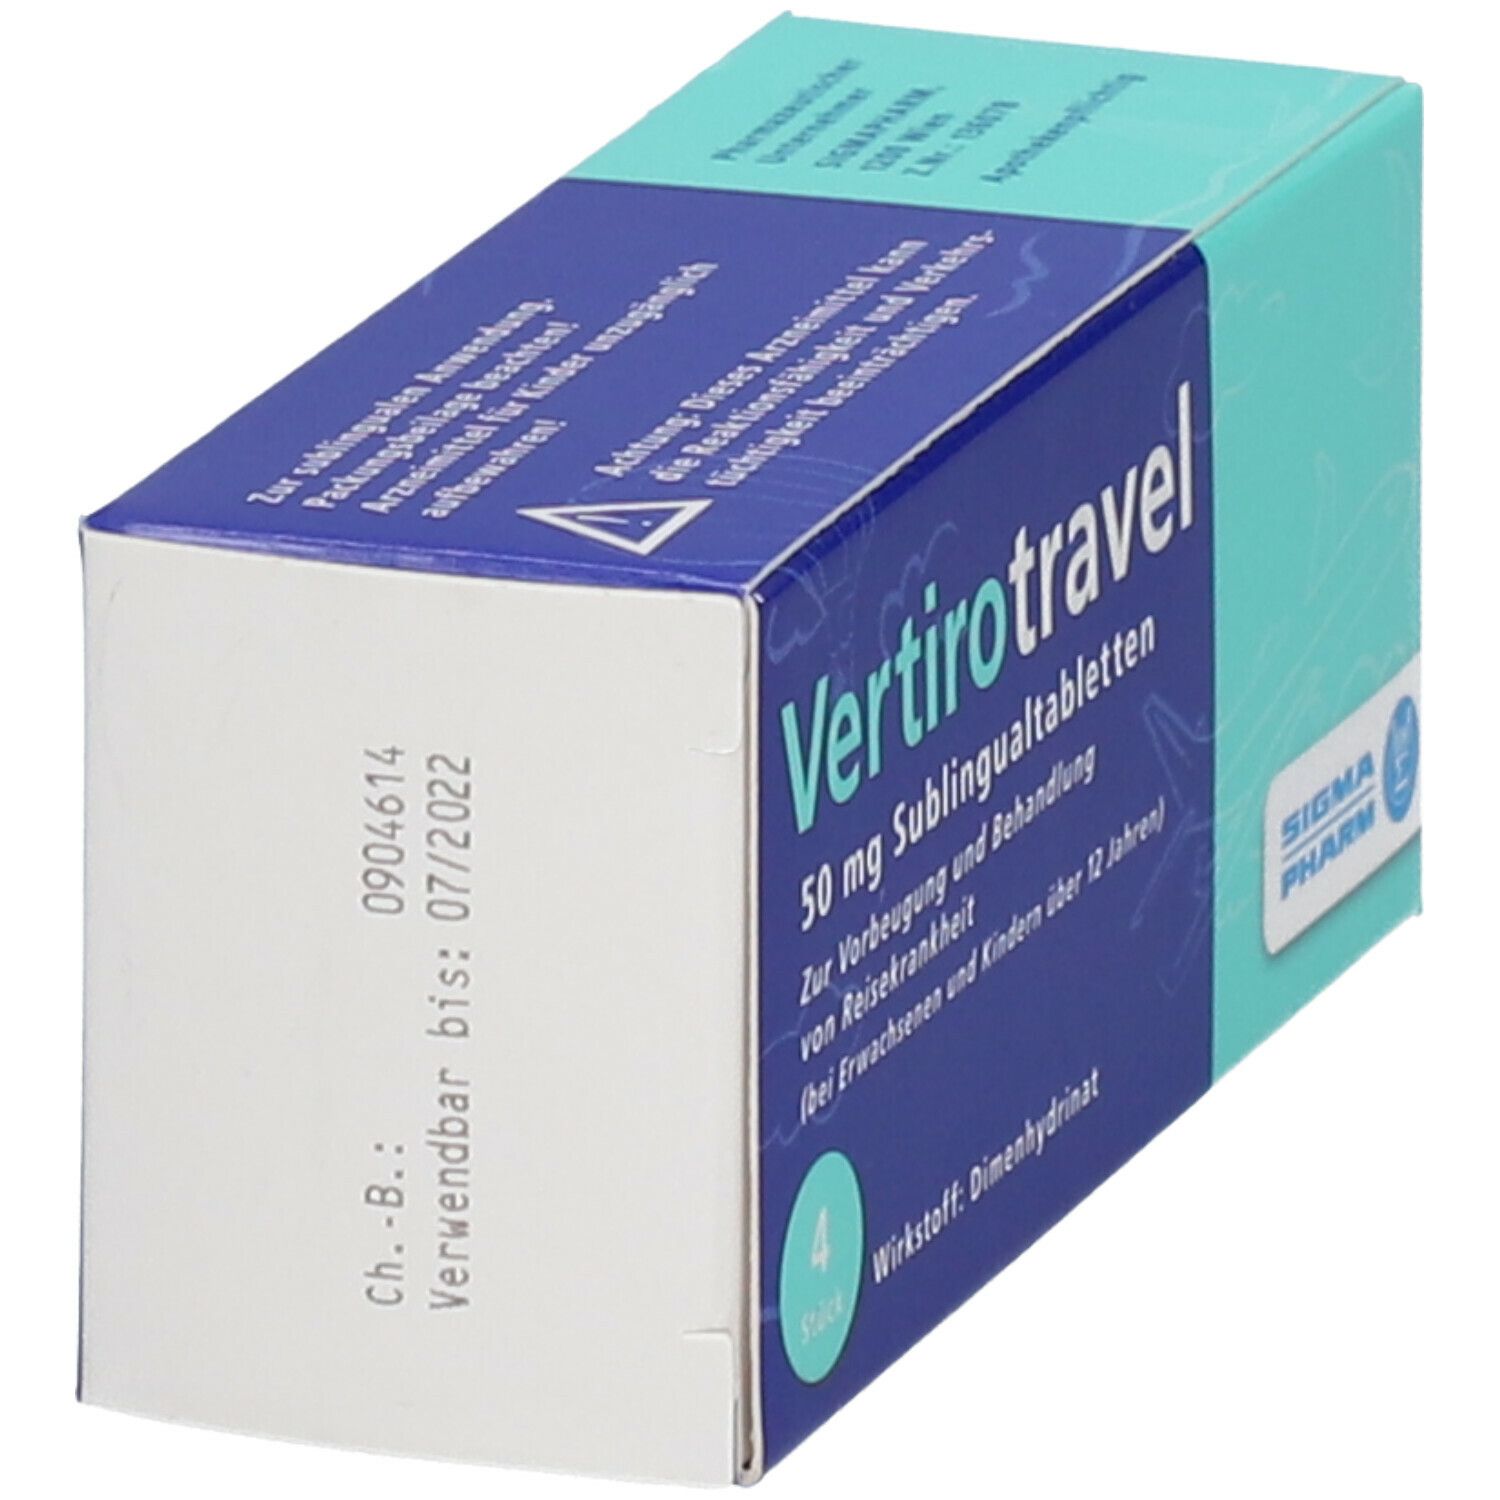 Vetirotravel 50 mg